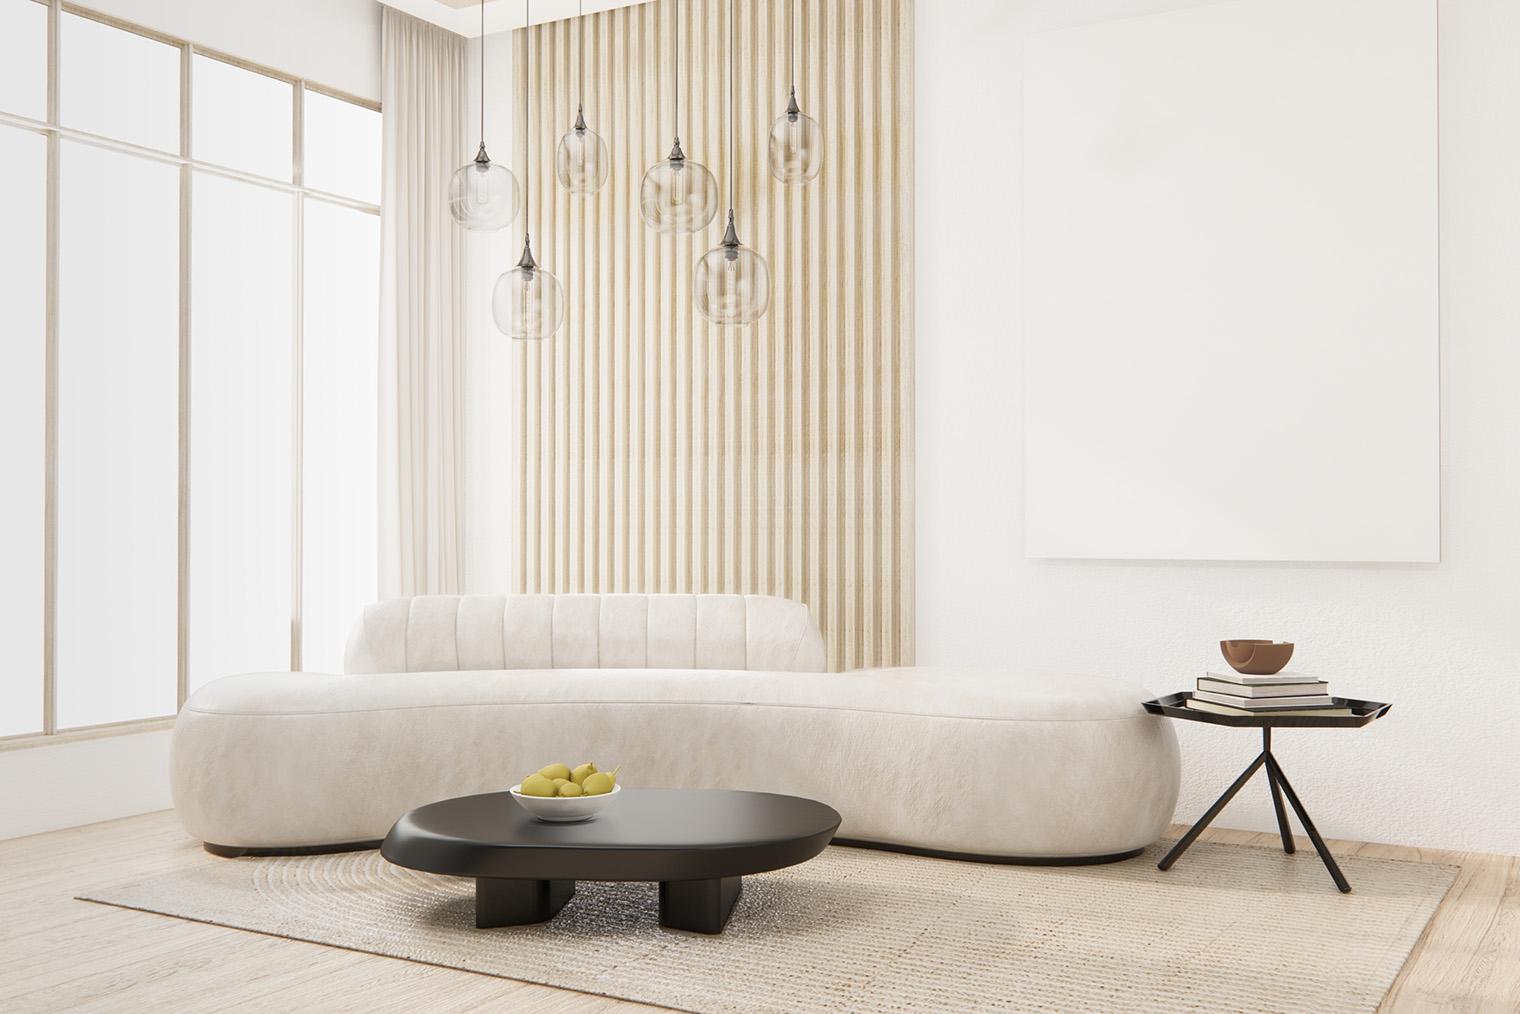 Серый интерьер в гостиной: идеи дизайна, сочетания цветов и материалы, 30+ фото